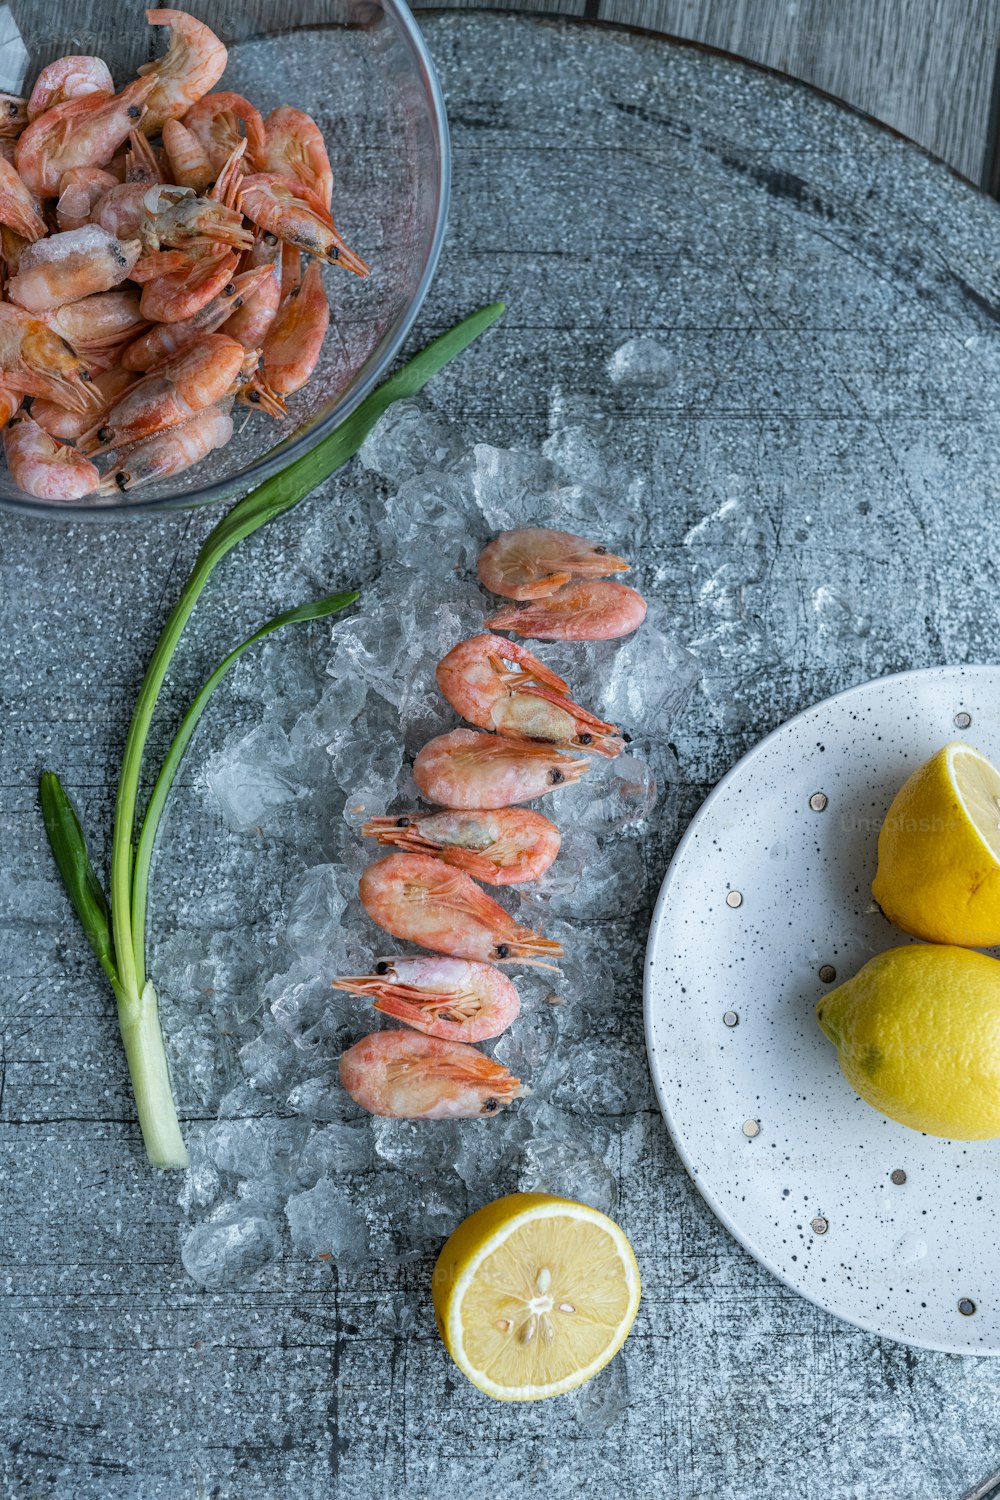 a plate of shrimp next to a bowl of lemons